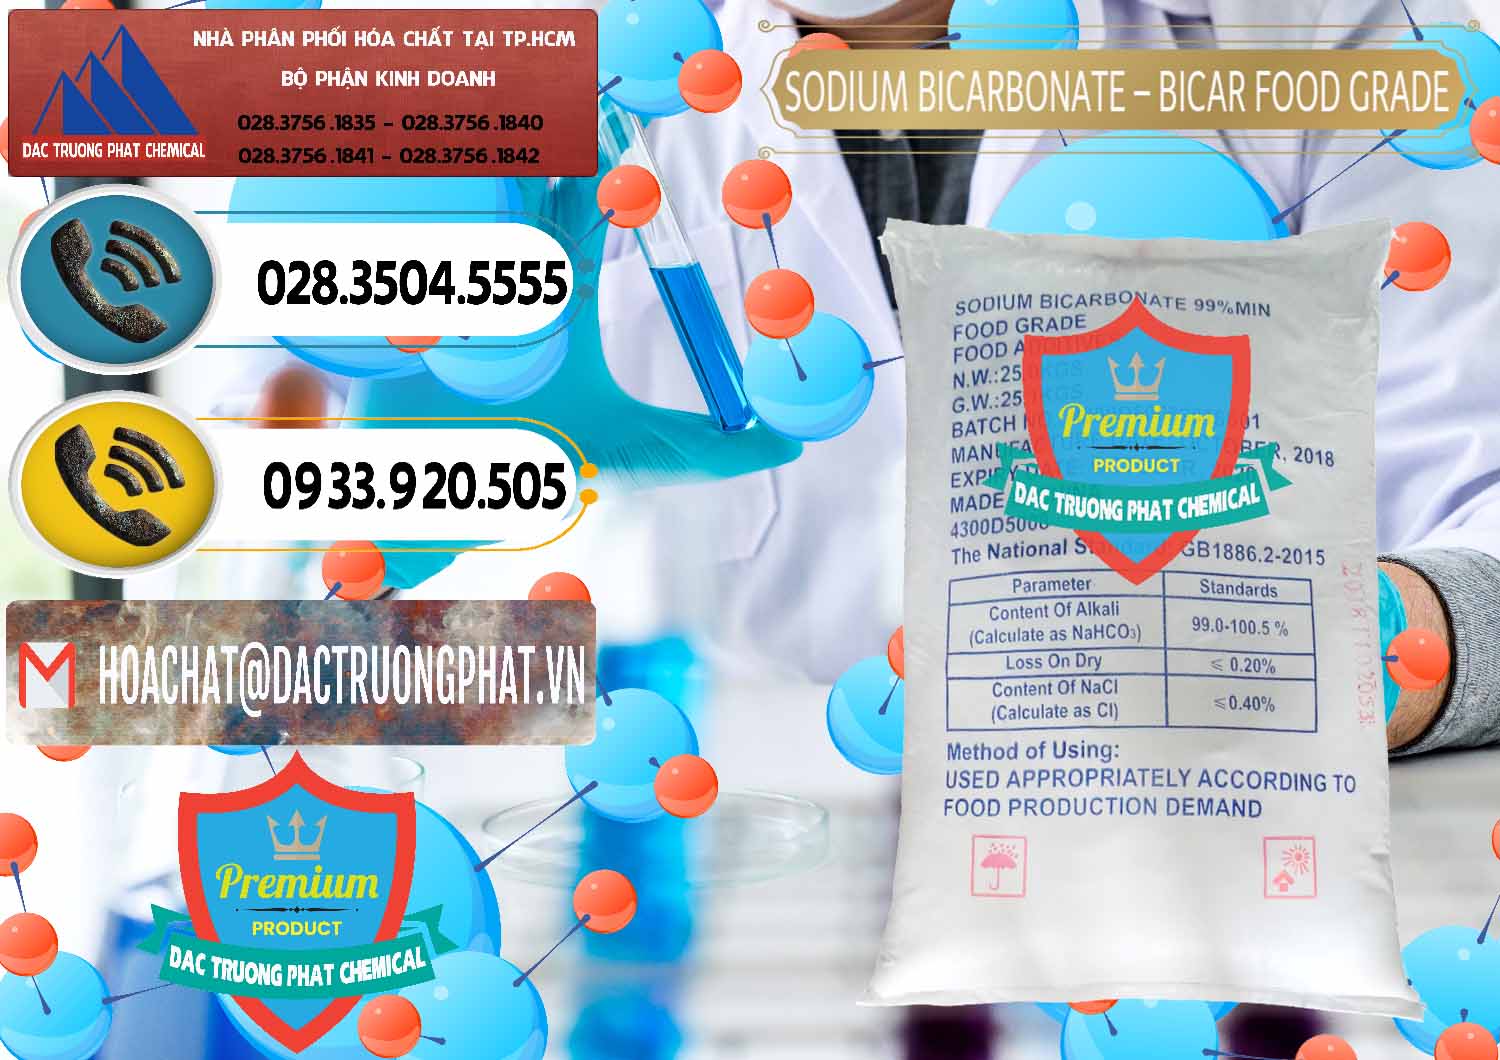 Nơi chuyên bán - cung ứng Sodium Bicarbonate – Bicar NaHCO3 Food Grade Trung Quốc China - 0138 - Công ty kinh doanh - cung cấp hóa chất tại TP.HCM - hoachatdetnhuom.vn